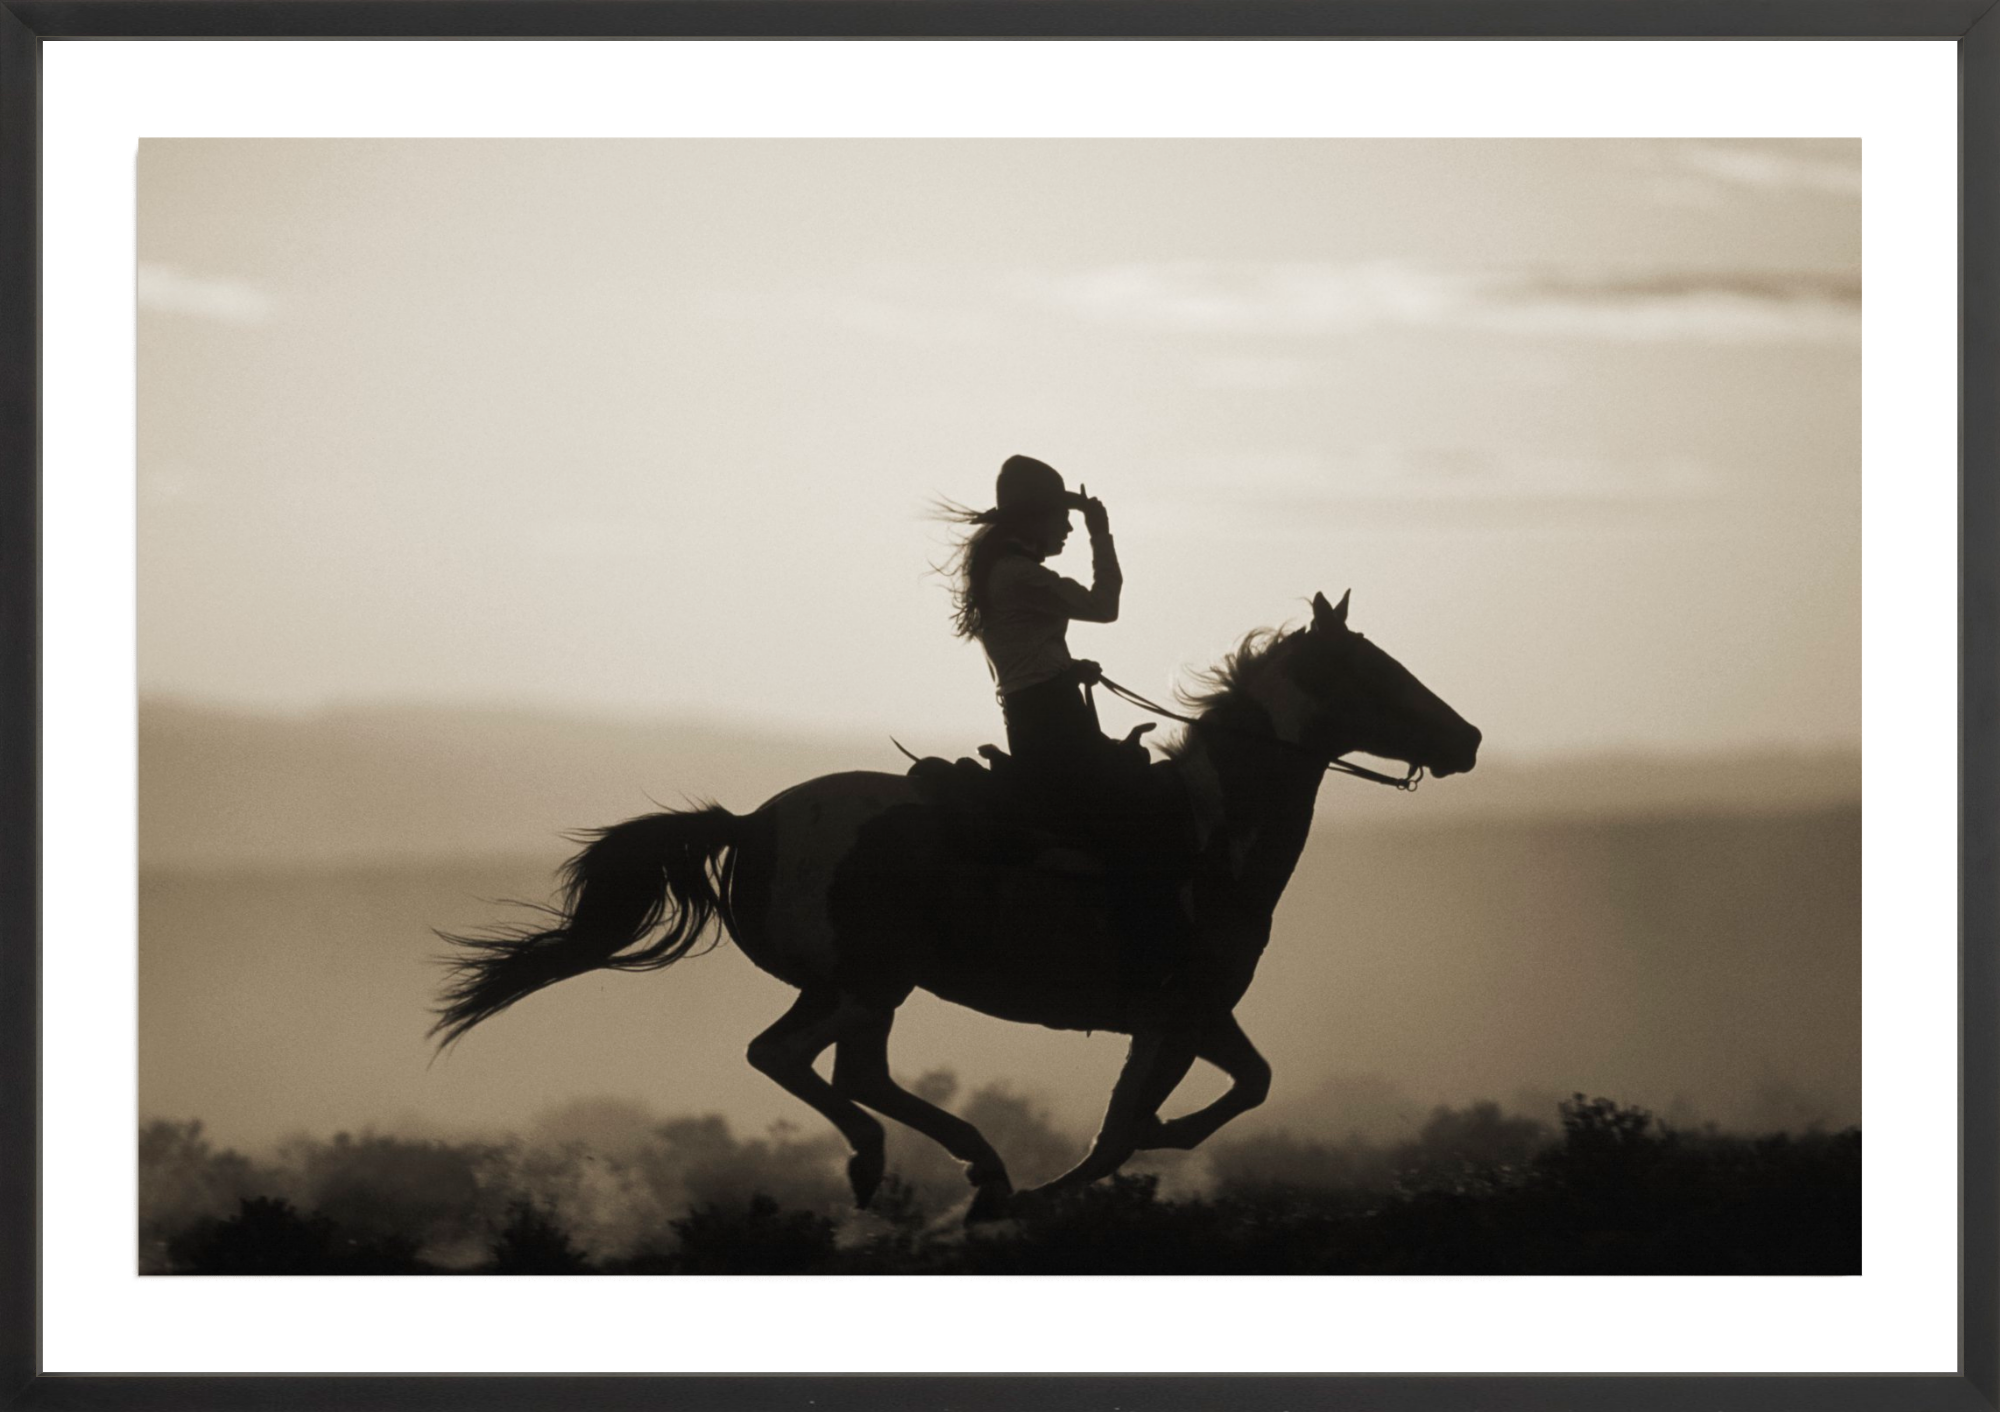 Girl on Horseback